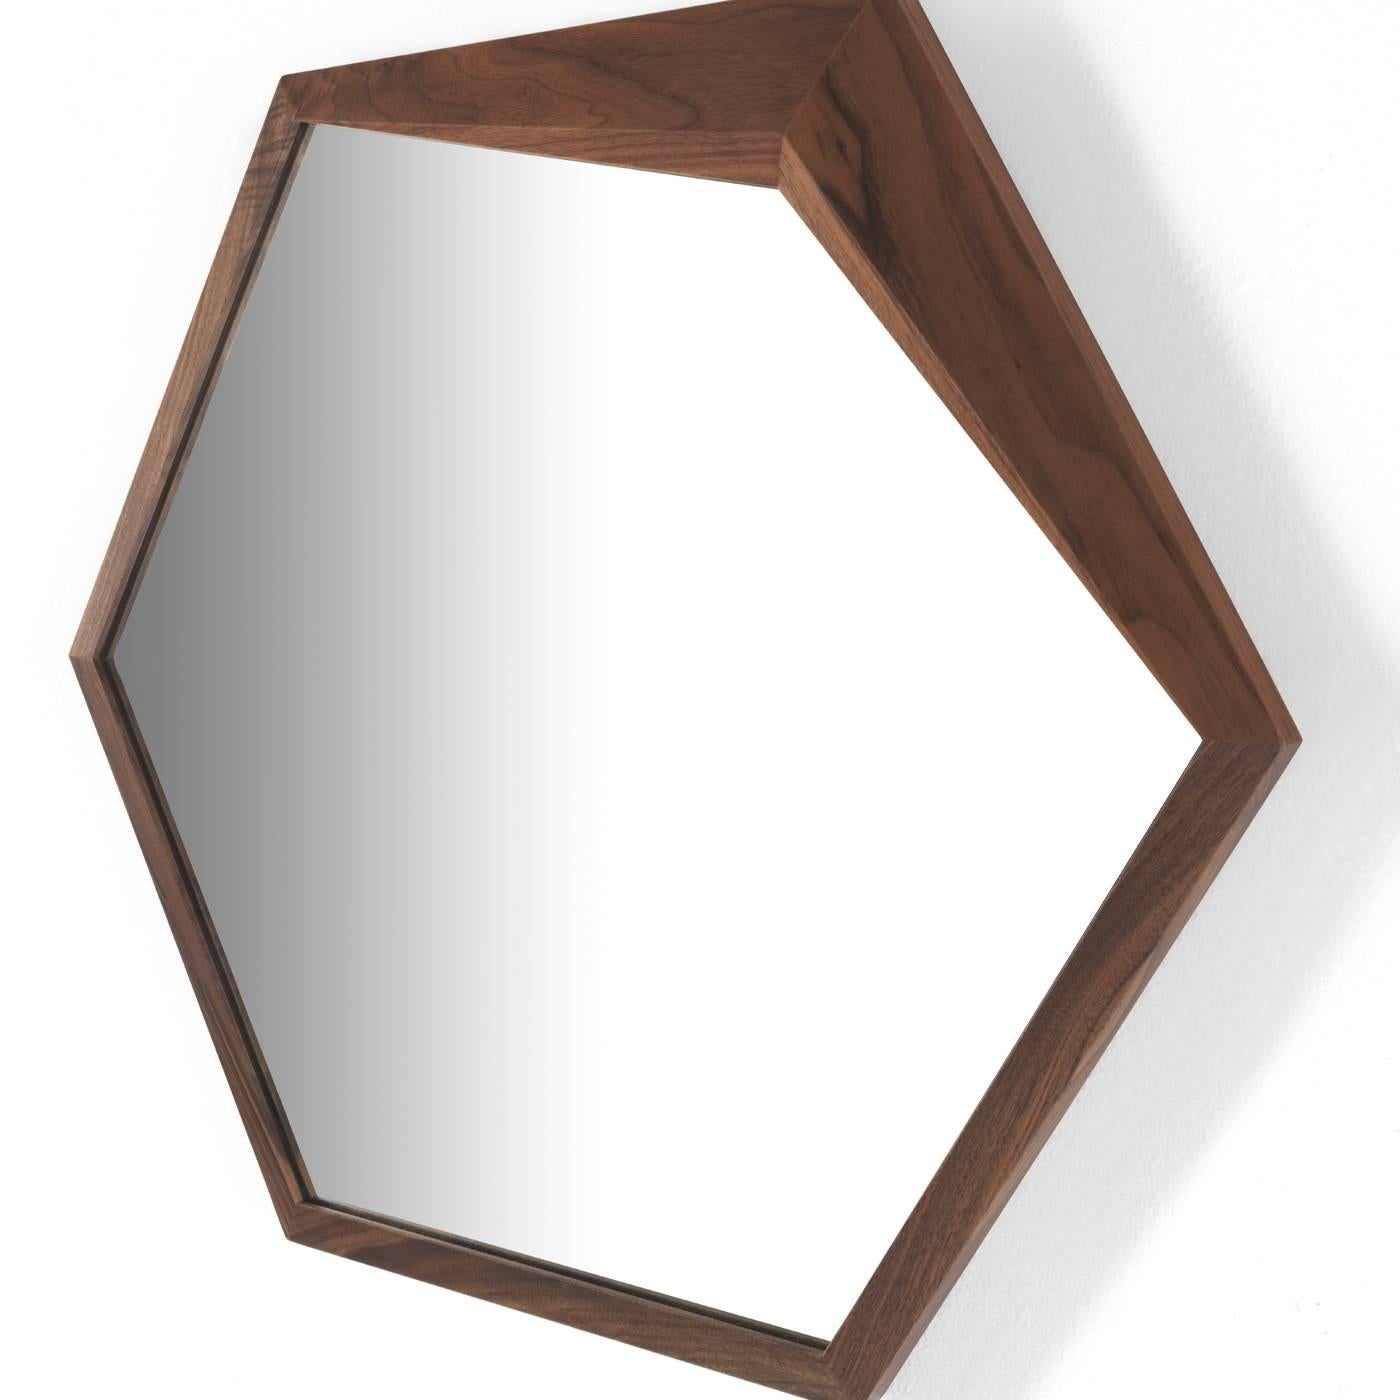 Die minimalistische Form dieses sechseckigen Spiegels wird von einer exquisiten Struktur aus massivem Nussbaumholz umrahmt, die in einer ihrer Ecken, wo das Holz dicker wird, einen charmanten Akzent setzt und diesem zeitlosen, funktionalen